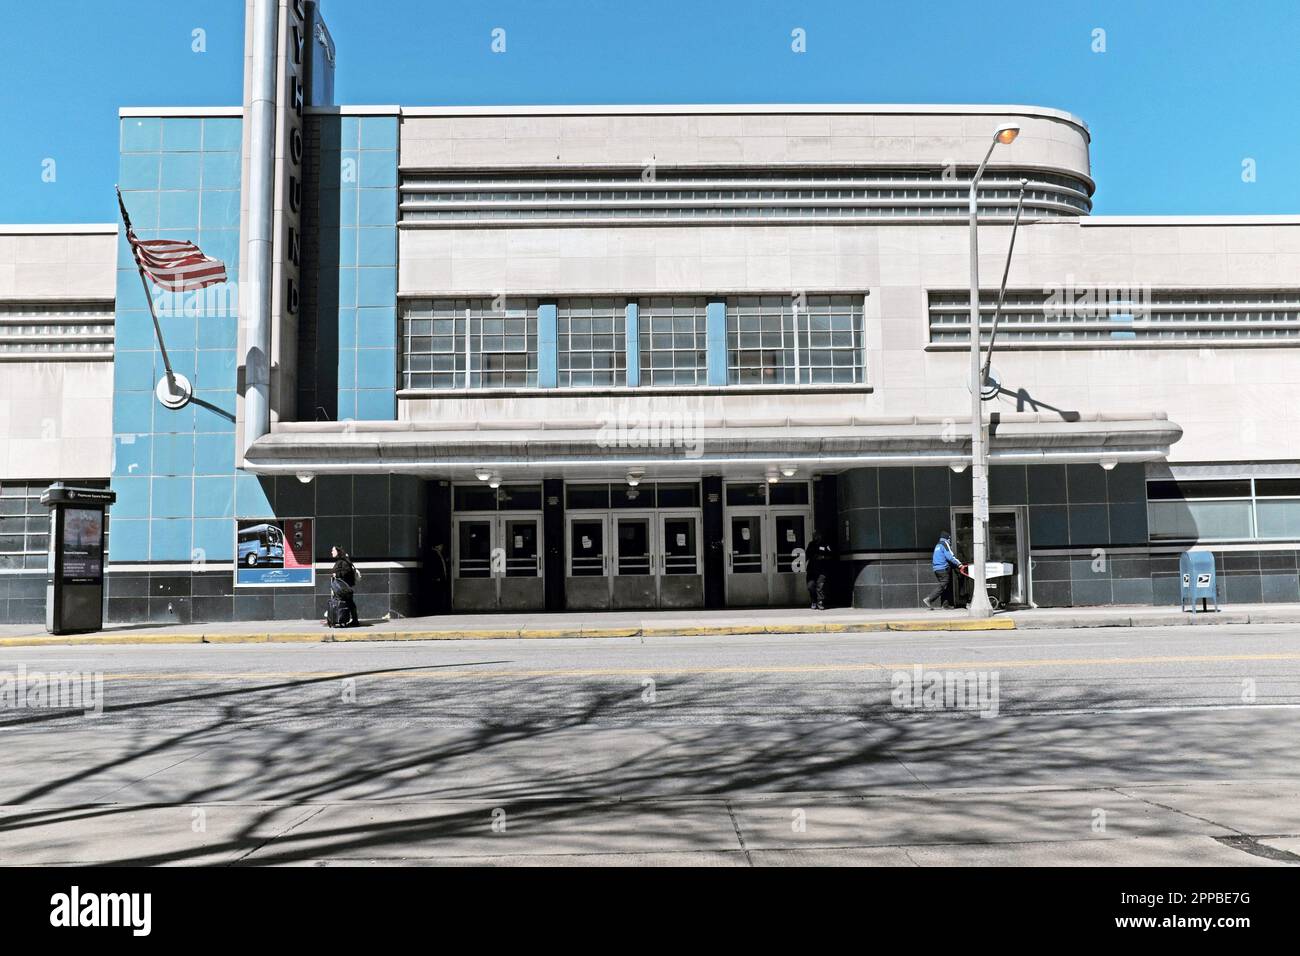 Der Greyhound-Busbahnhof in der Innenstadt von Cleveland wurde 1948 eröffnet und vom Architekten William Strudwick Arrasmith entworfen. Er ist zu einem berühmten architektonischen Meisterwerk geworden, das modernistische Architektur widerspiegelt. Der Bahnhof befindet sich an der Chester Avenue und befindet sich östlich der Innenstadt, sodass die wachsende Bevölkerung in der Innenstadt leicht erreichbar ist. Stockfoto